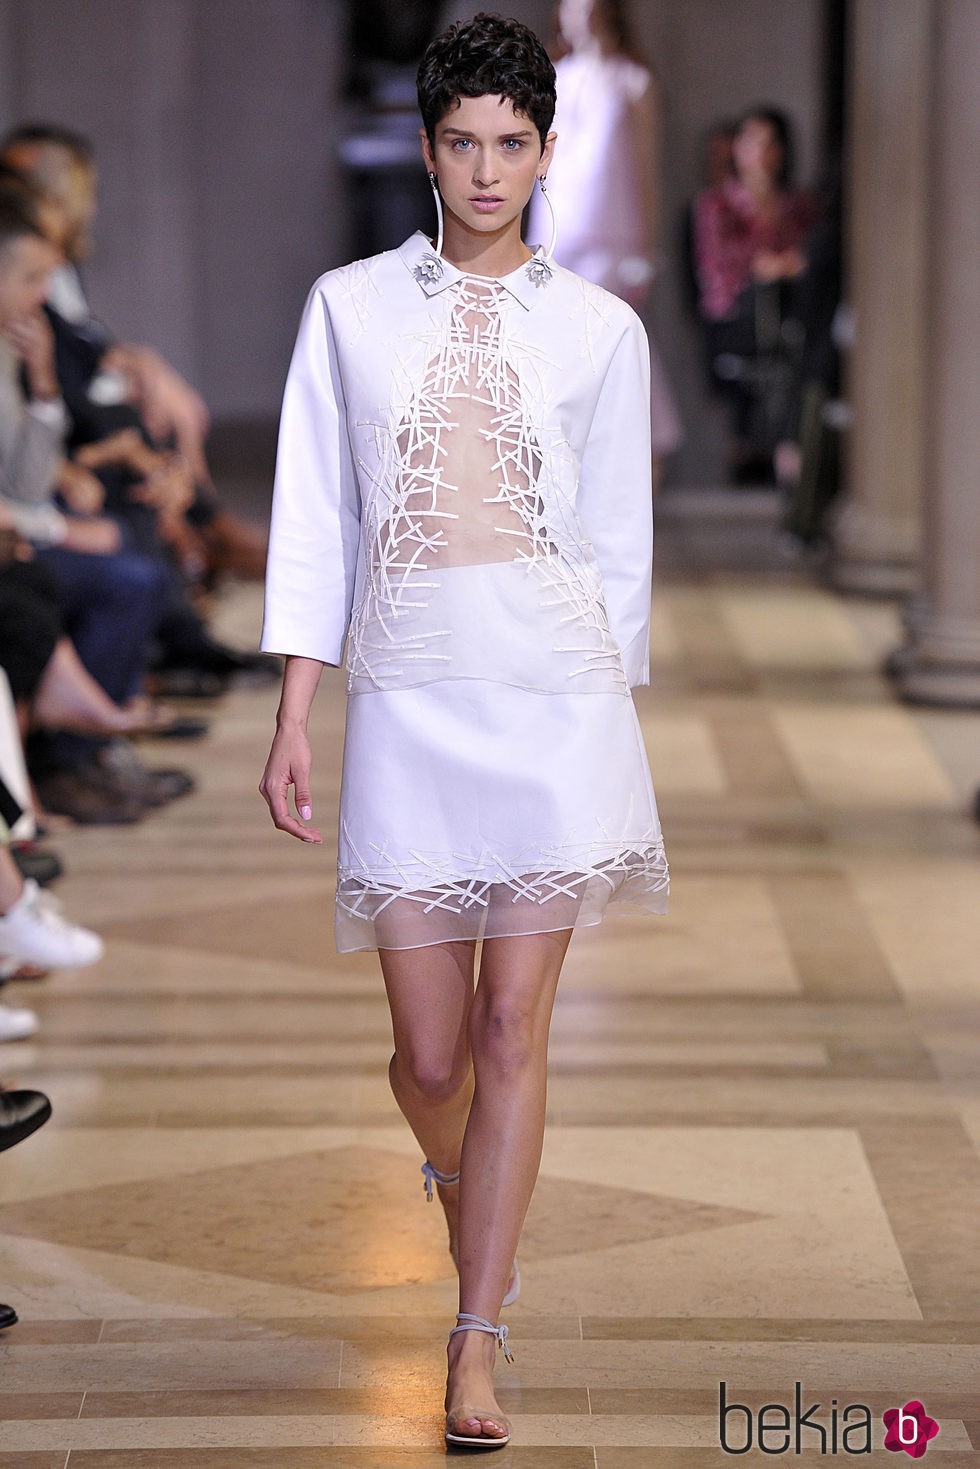 Traje de camisa y falda blanca de la colección de primavera/verano 2016 del desfile de Carolina Herrera en la Nueva York Fashion Week